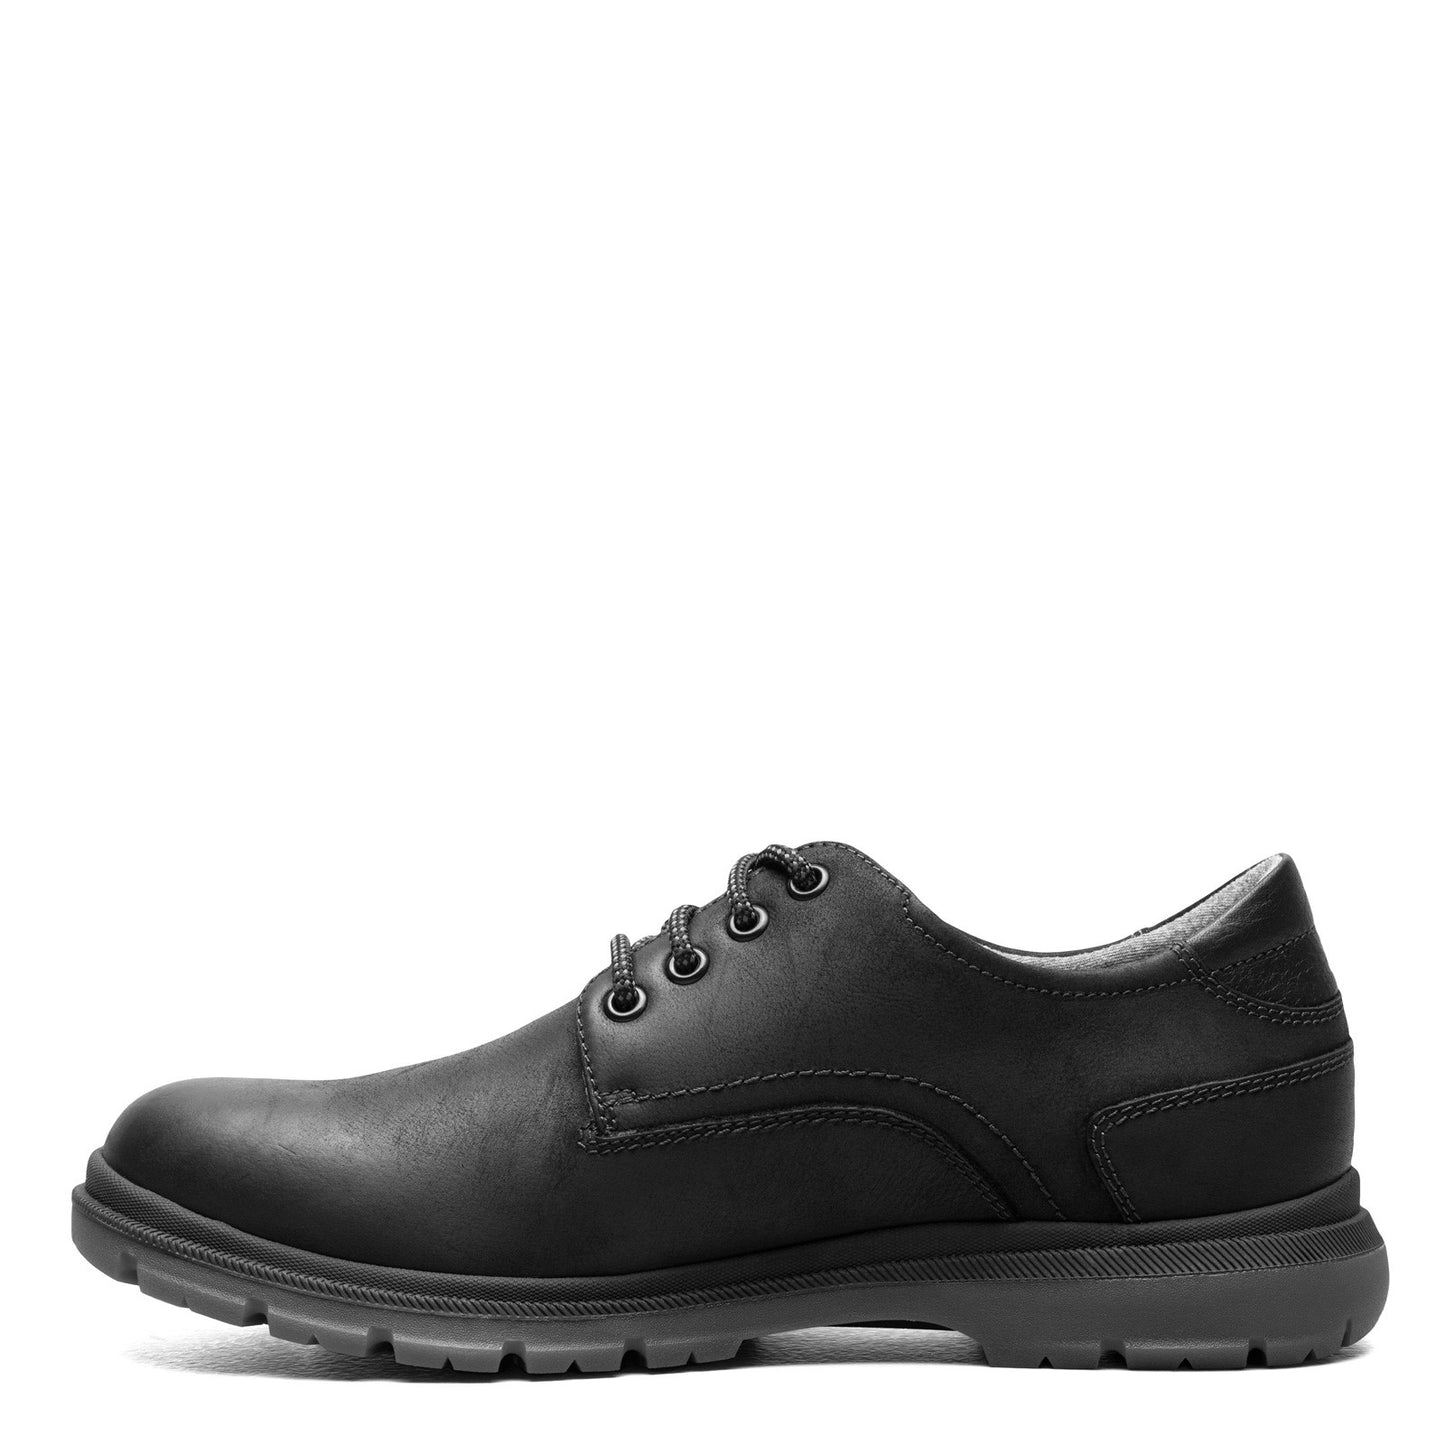 Peltz Shoes  Men's Florsheim Lookout Plain Toe Oxford BLACK 13394-010